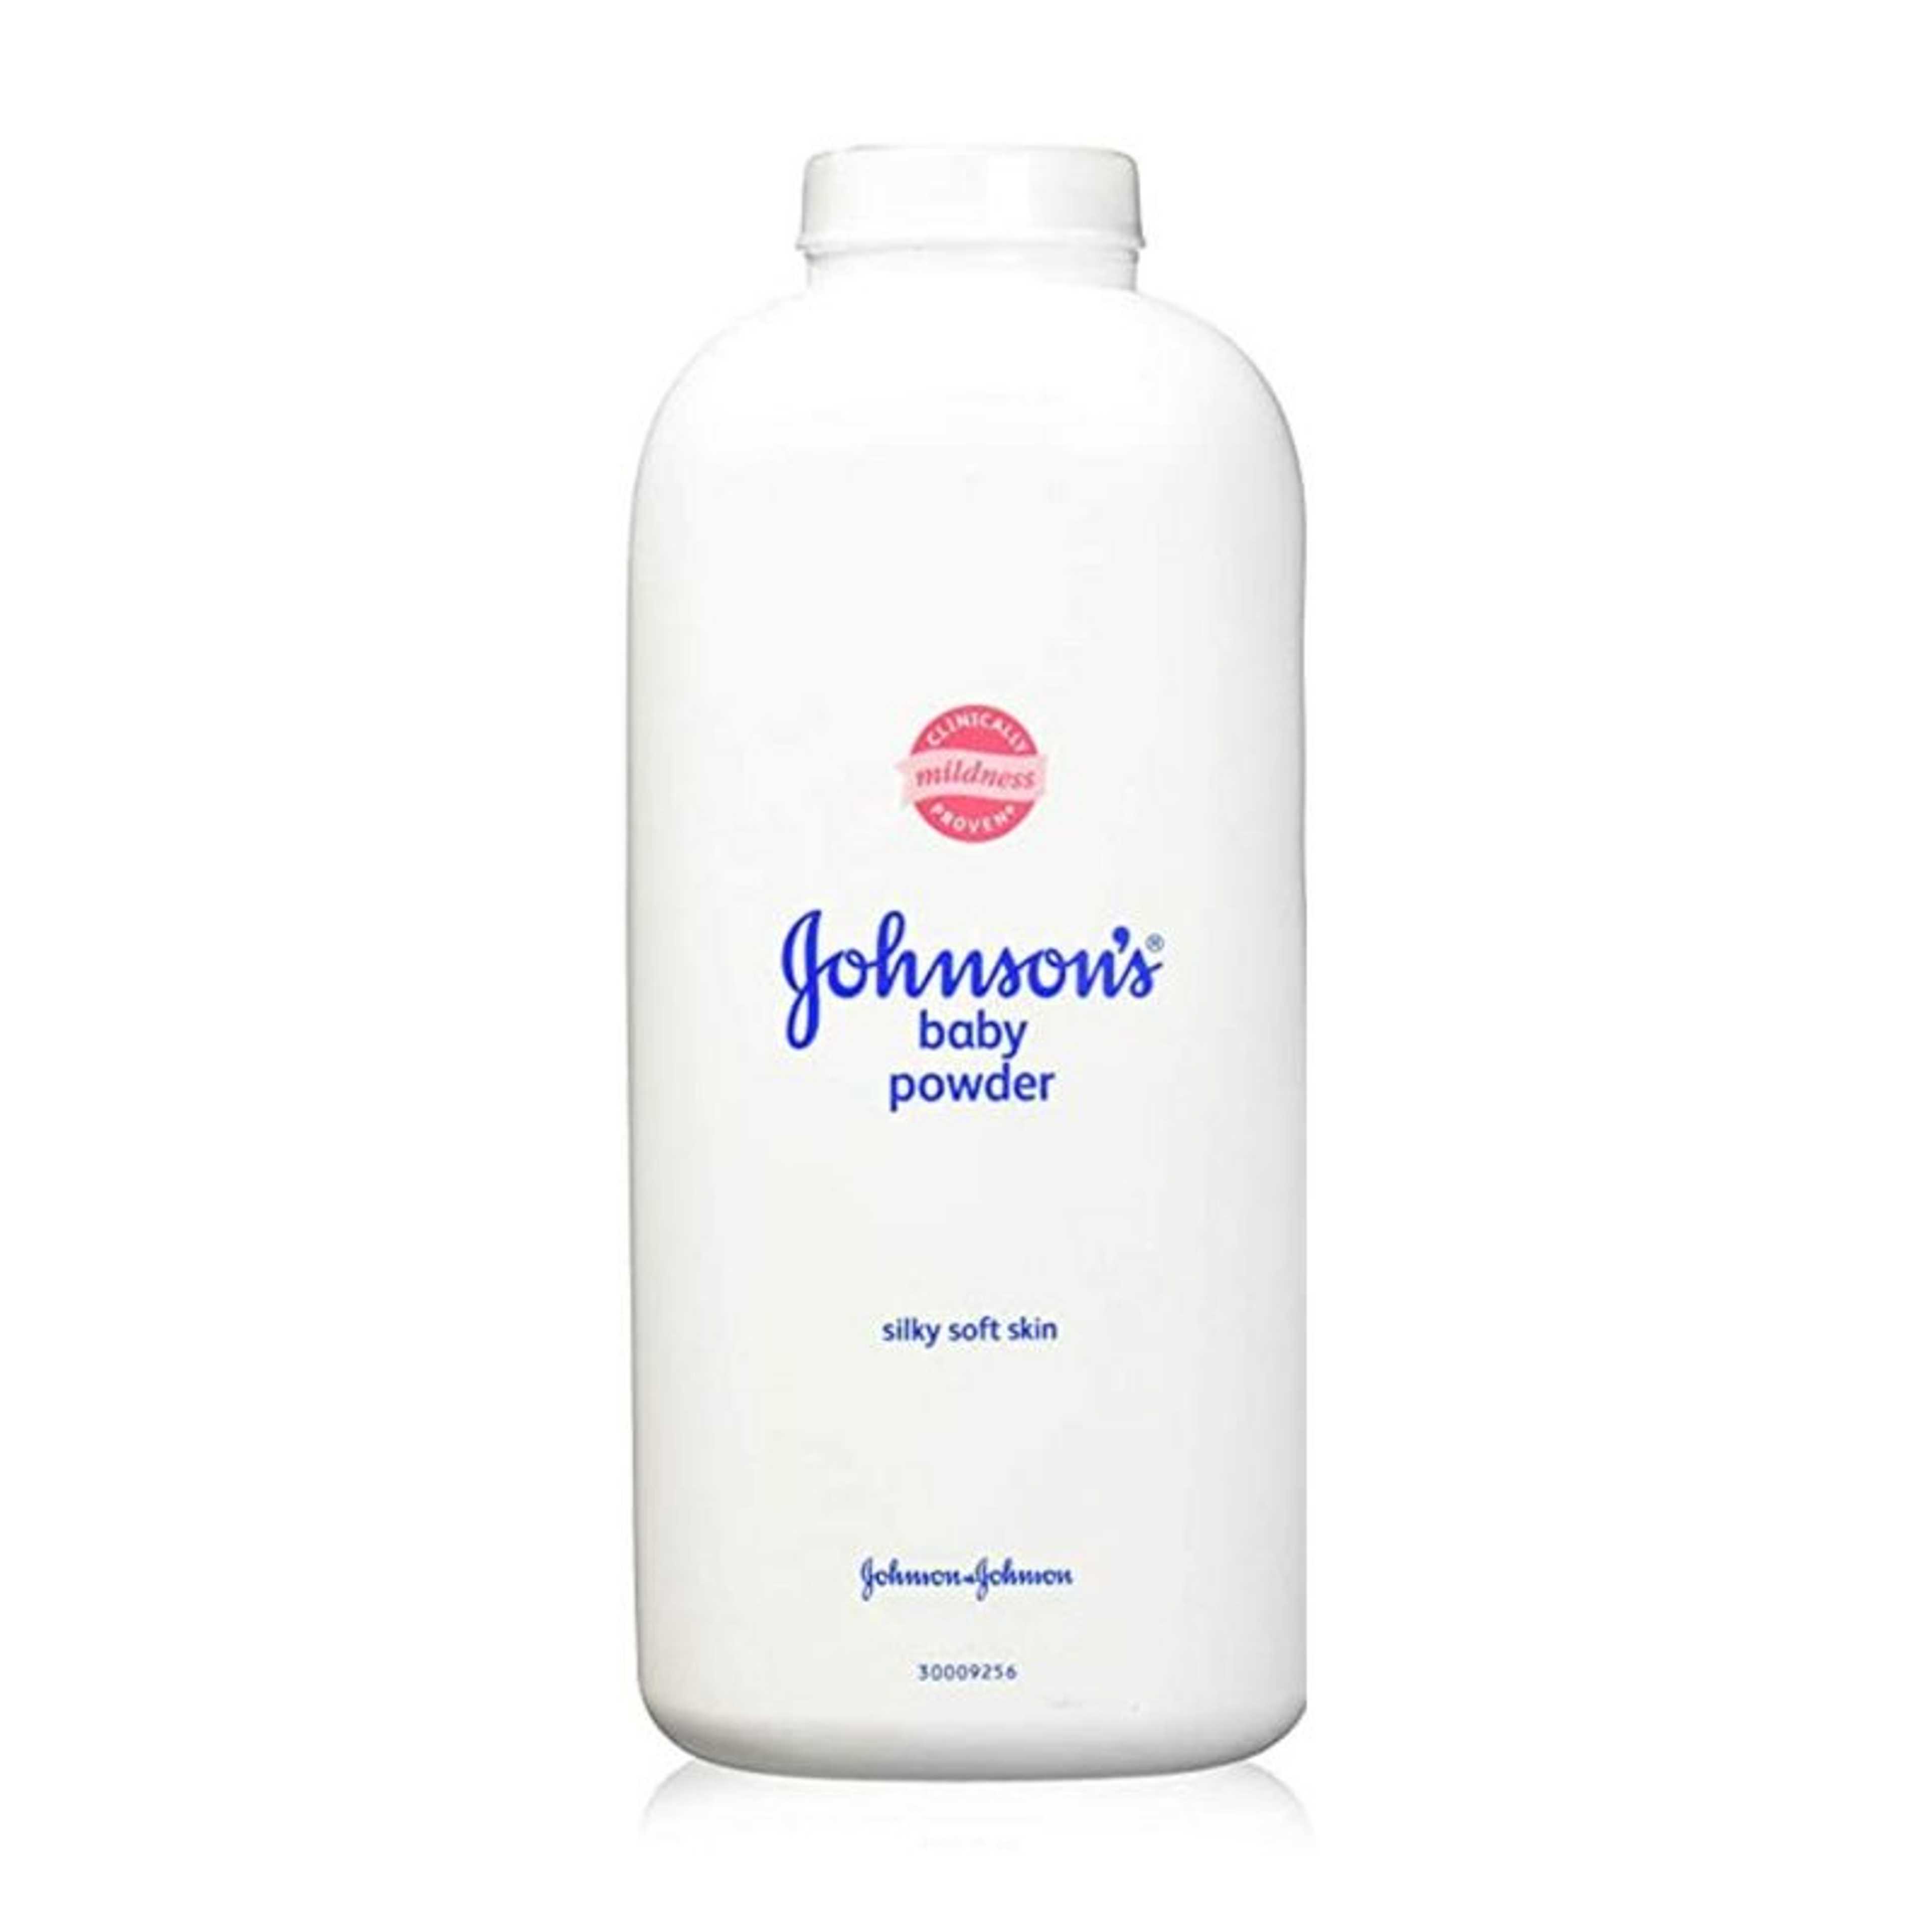 Johnson's Baby Powder Silky Soft skin 4 oz.